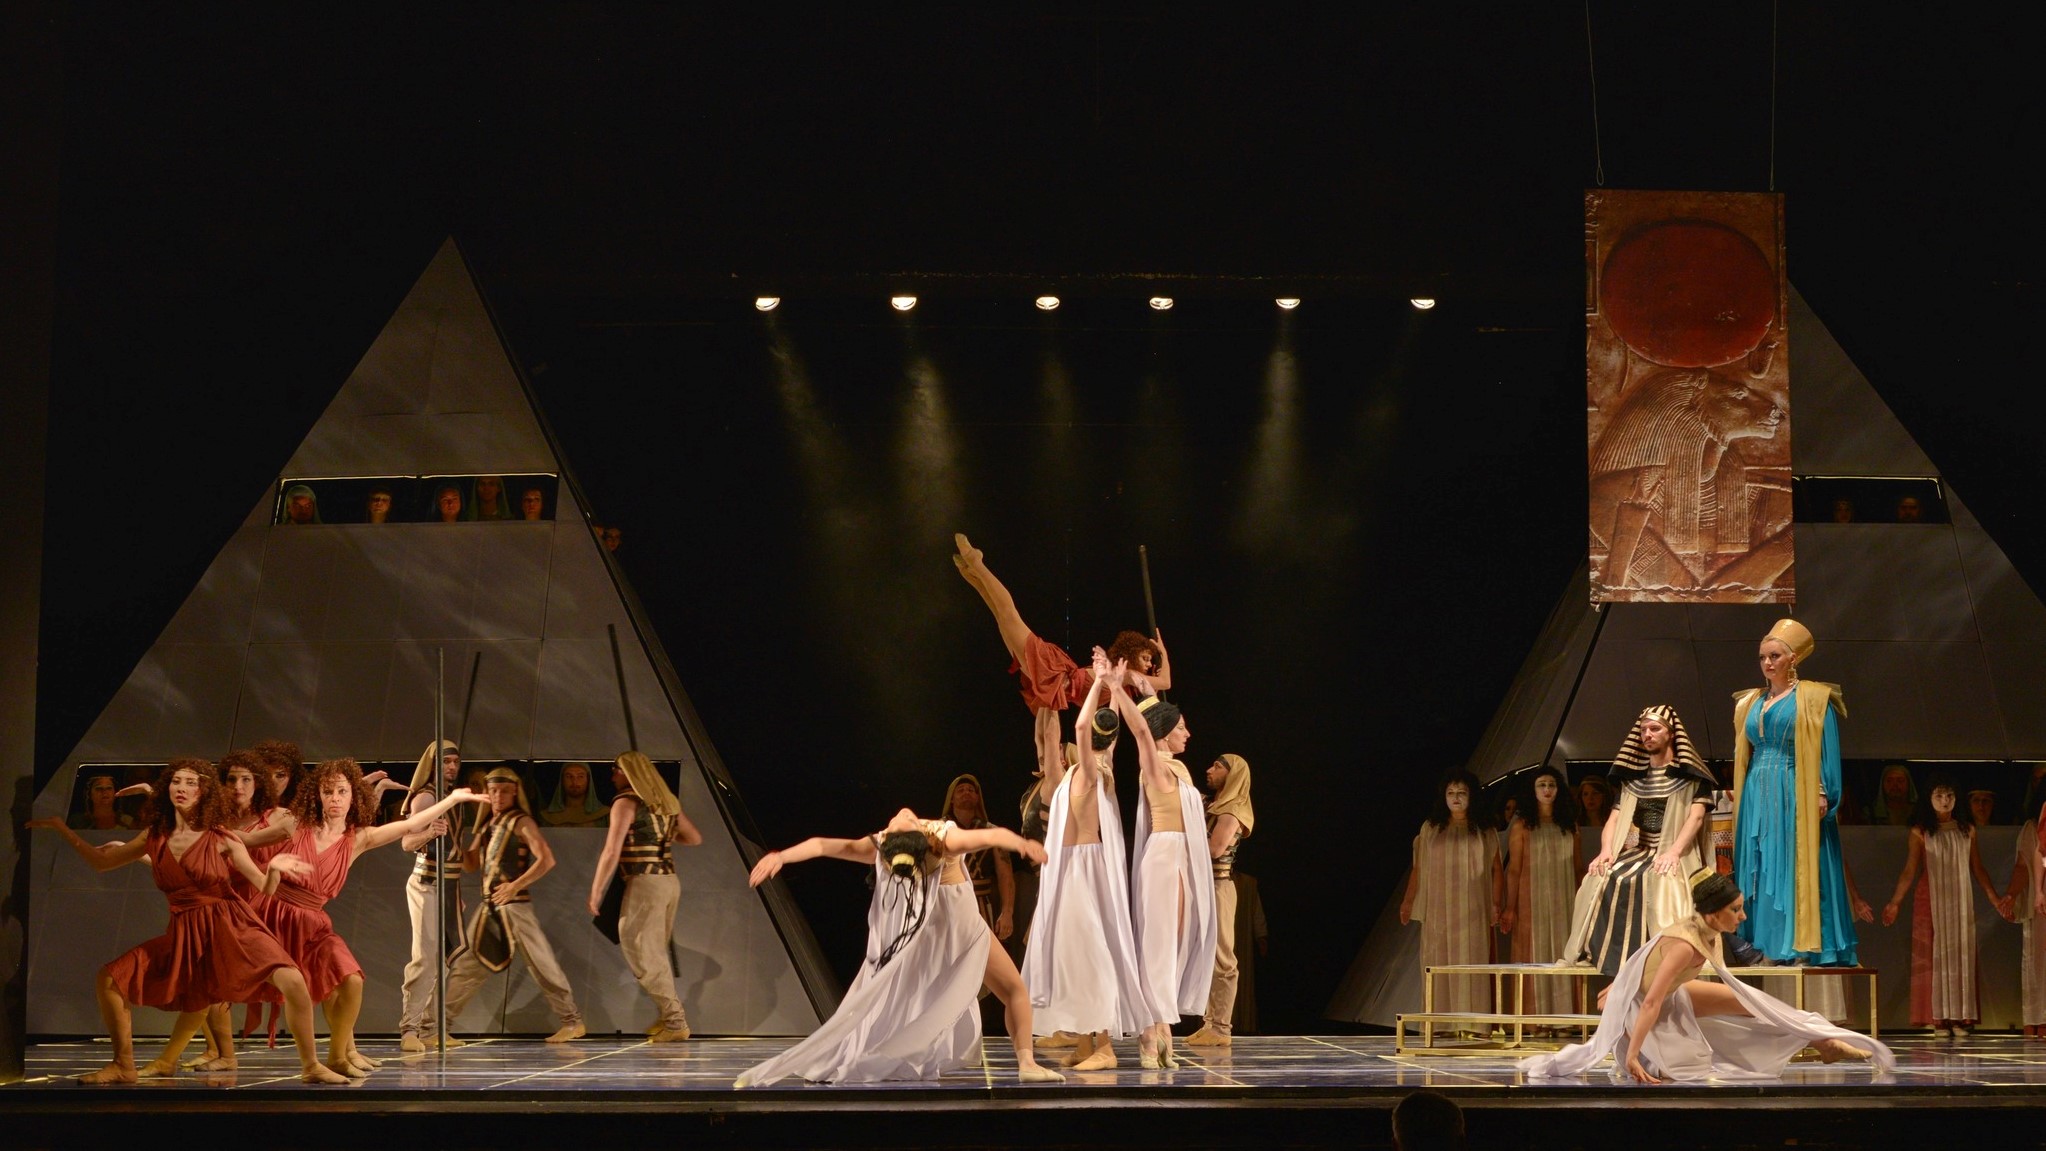 Szerelmi háromszög, vetélkedés, eltérő hazaképek – Aida a magyar operában